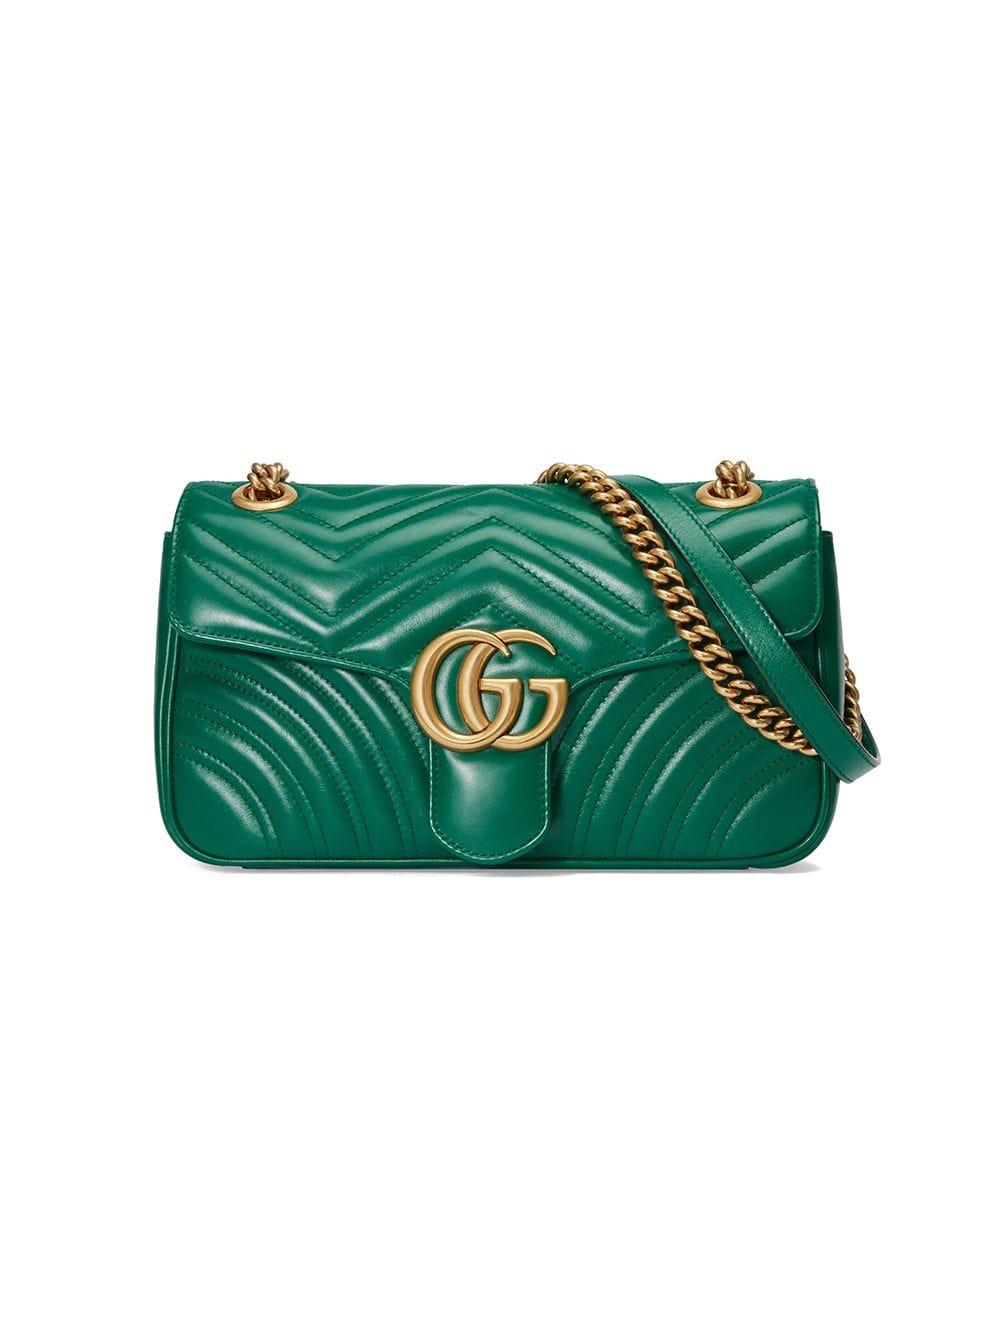 green gucci purse